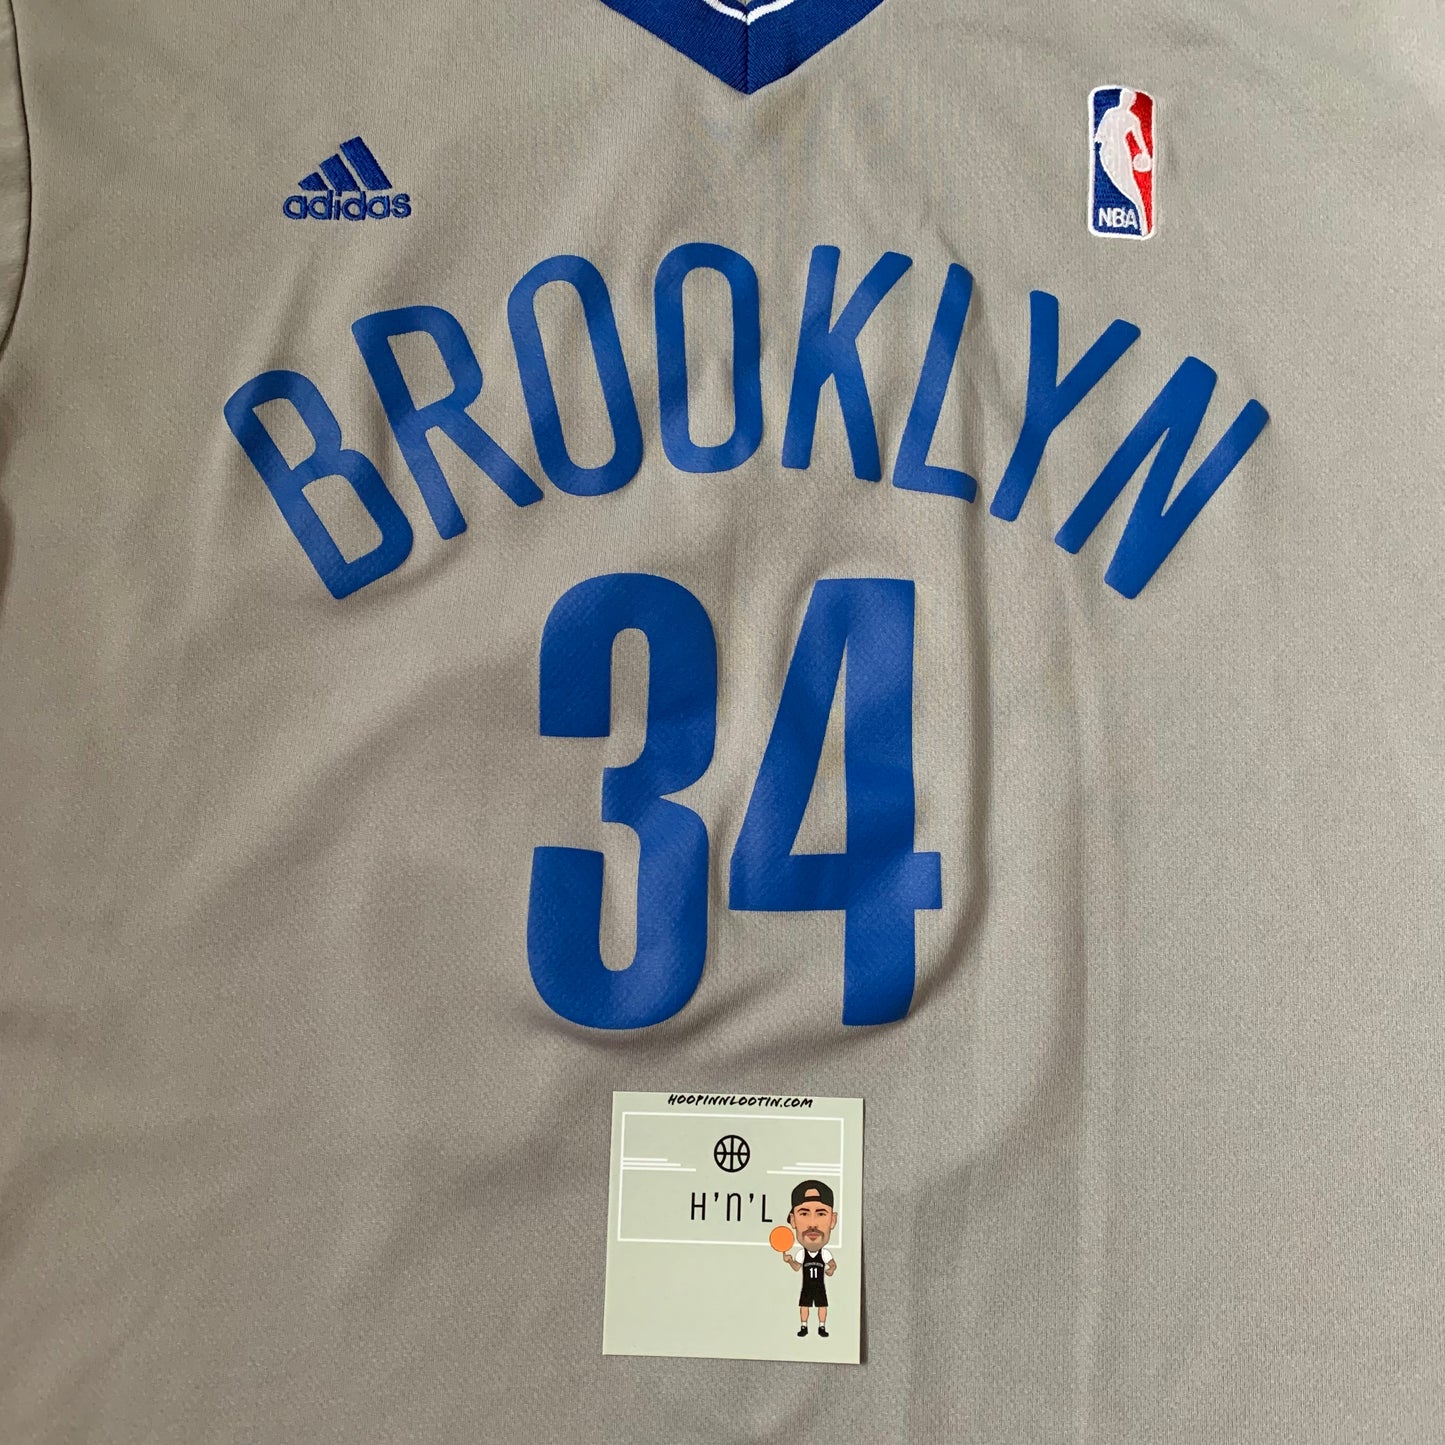 Paul Pierce Brooklyn Nets Adidas Jersey